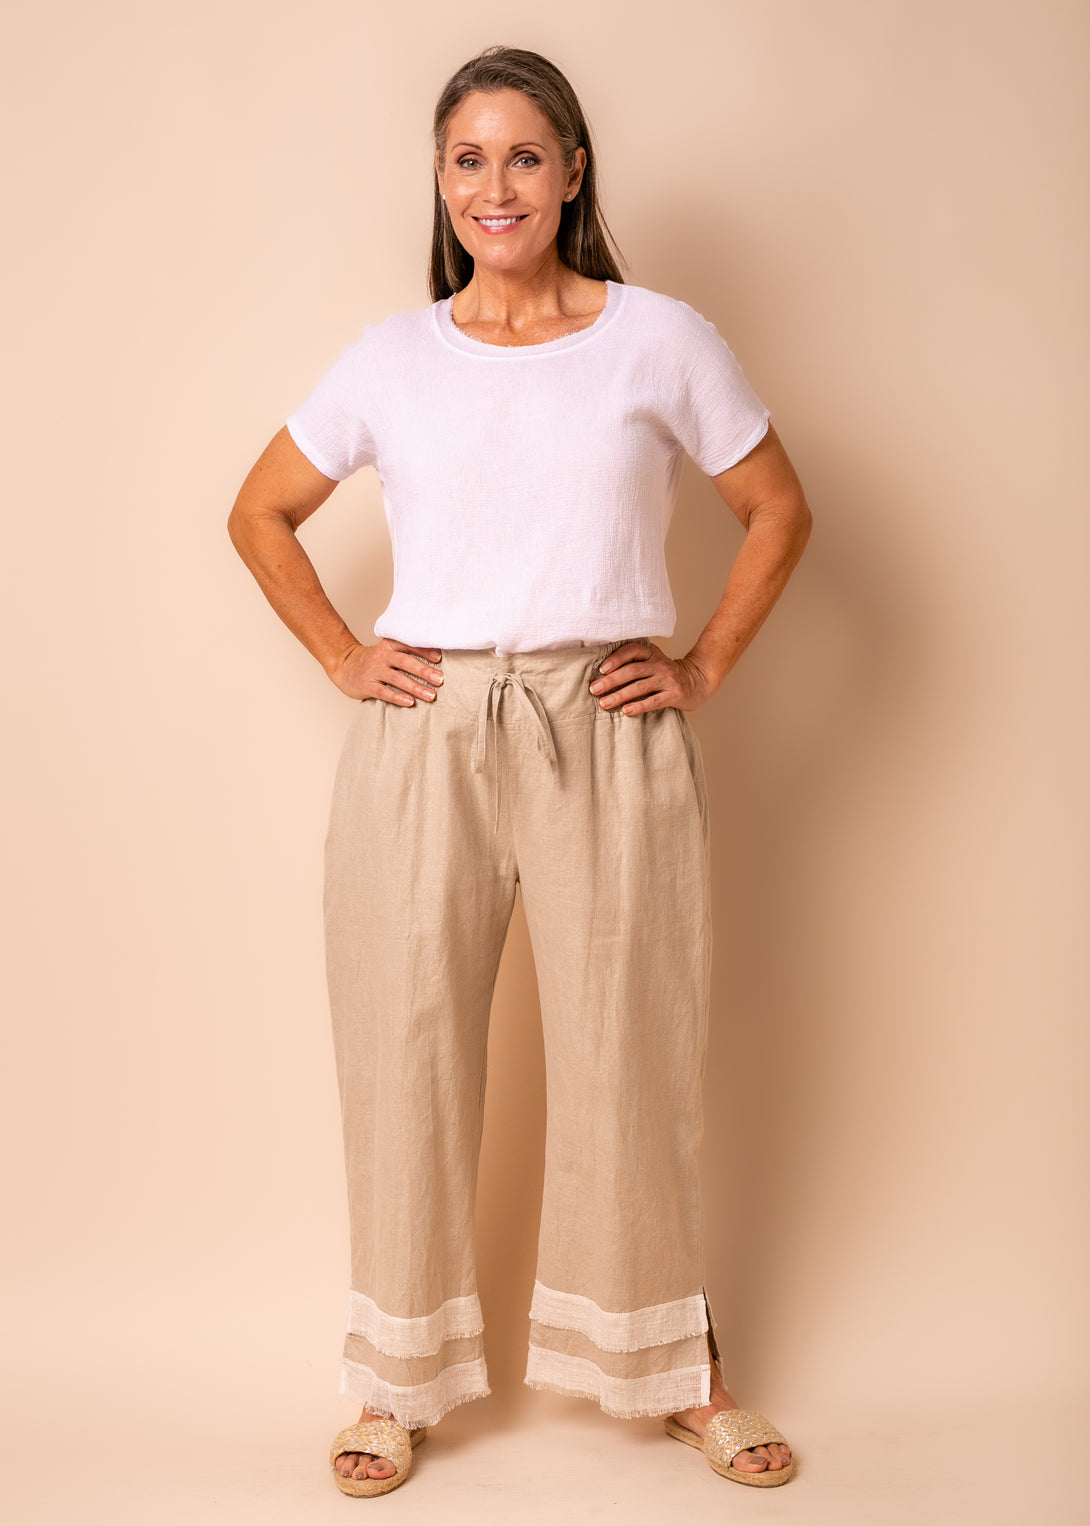 Rio Linen Blend Pants in Latte - Imagine Fashion